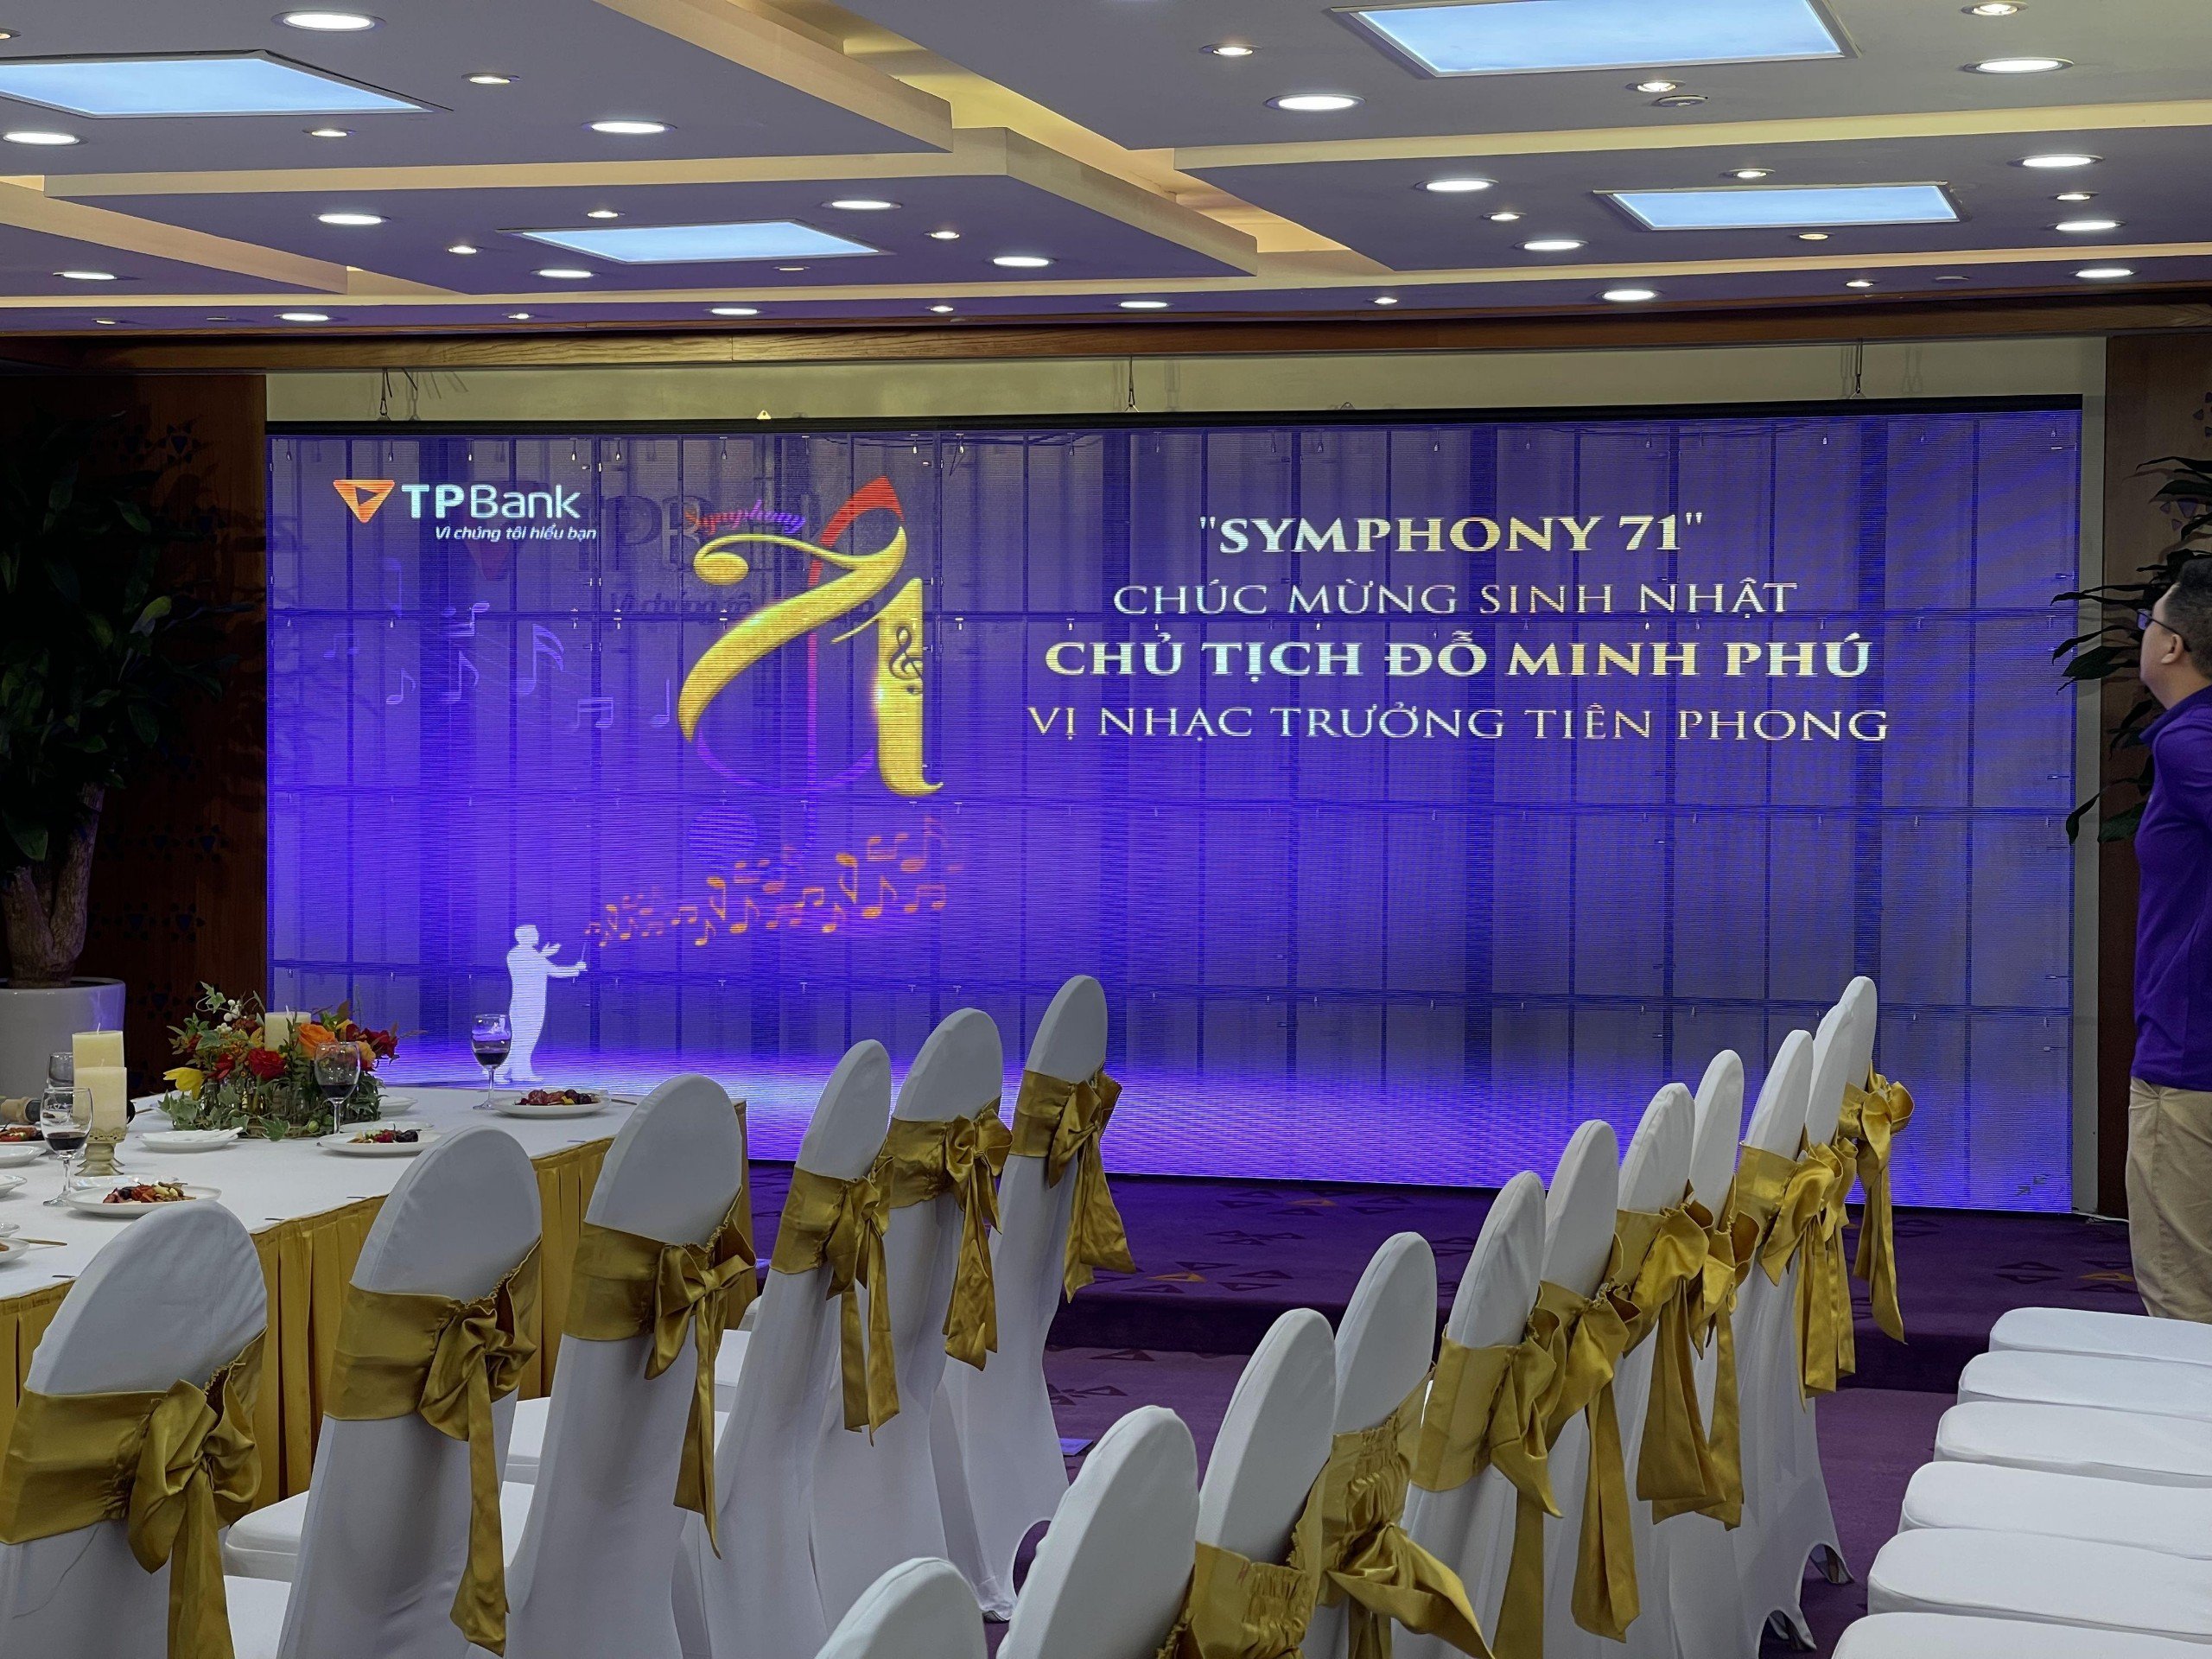 Sunmax LED vô cùng vinh dự khi được là một trong những nhà tài trợ màn hình LED trong suốt cho sự kiện "Symphony 71" của TPBank hội sở - mừng nhật chủ tịch Đỗ Minh Phú.